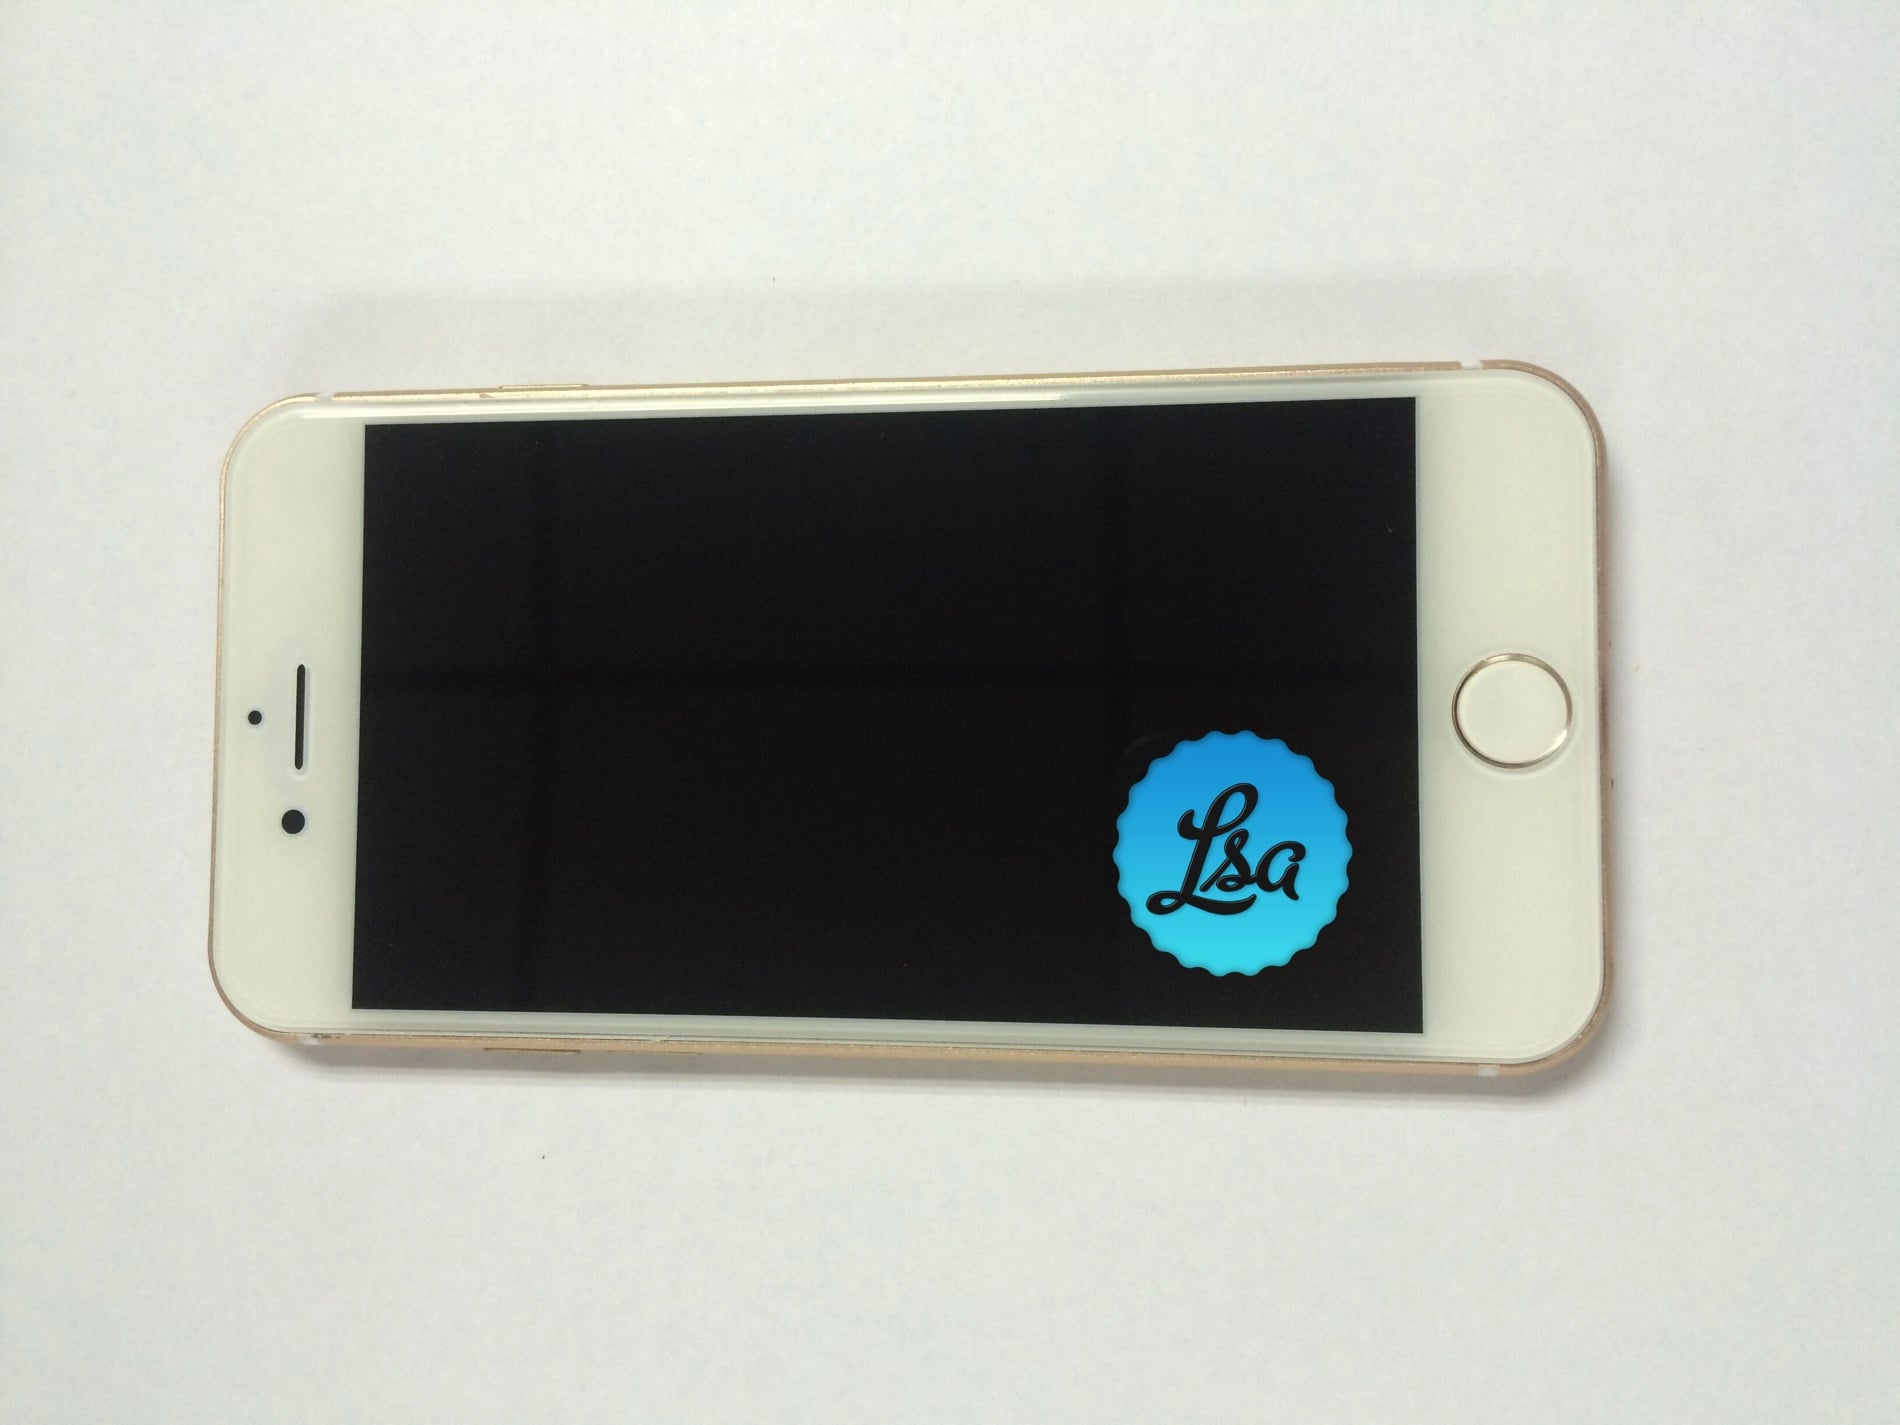 ゴールドカラーの「iPhone 7/7Plus」のモックアップ写真がリーク | iPod LOVE